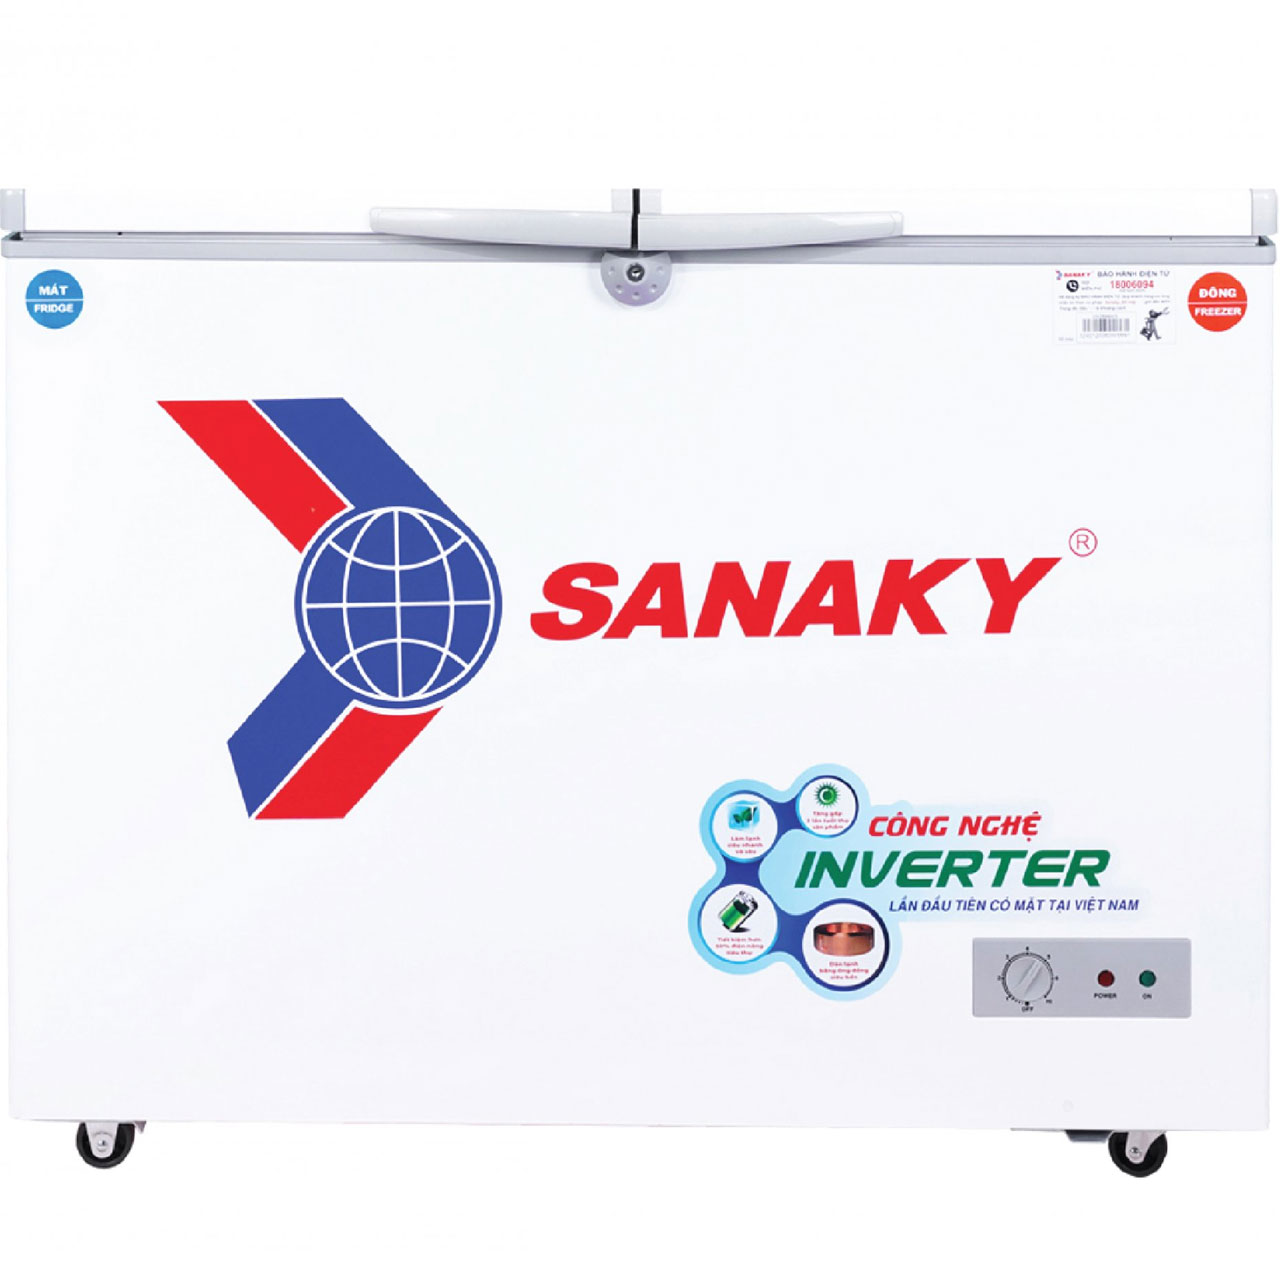 Nên mua tủ đông thường hay mua Tủ Đông Sanaky Inverter VH-2599W3